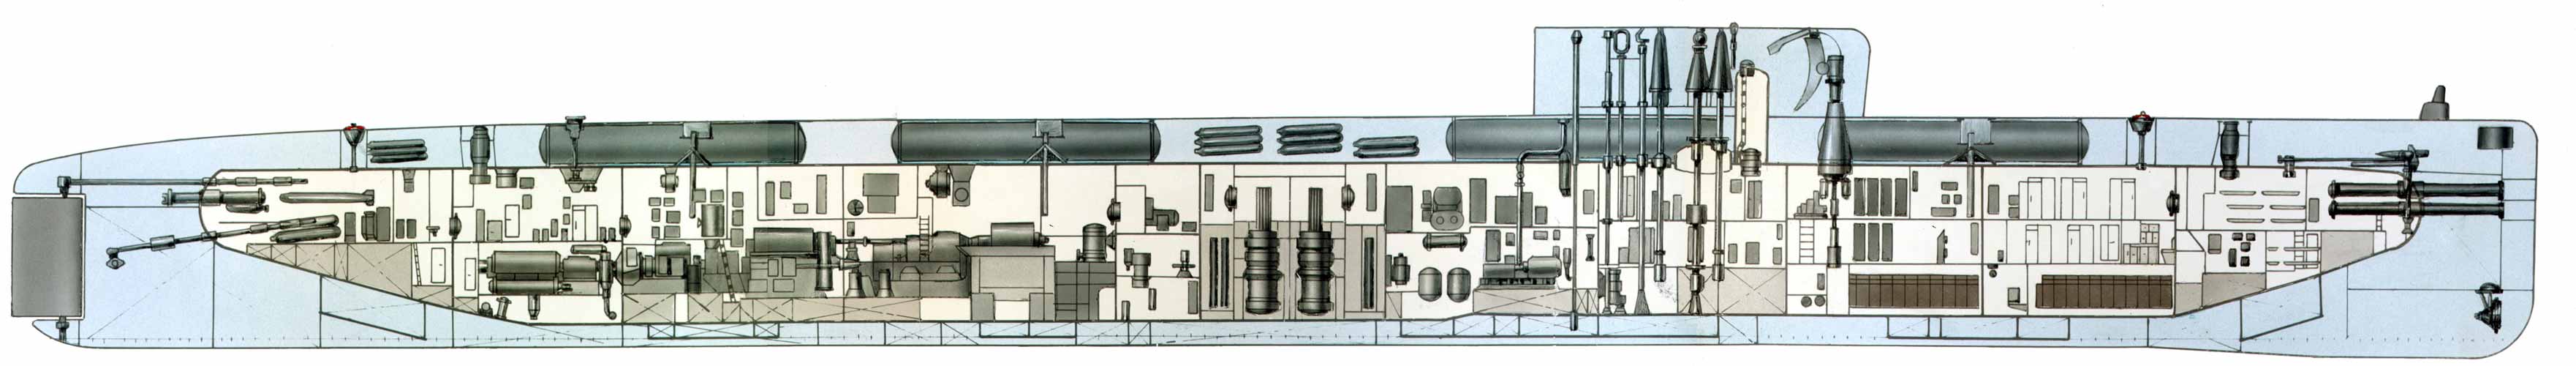 659型巡航飛彈核潛艇結構圖